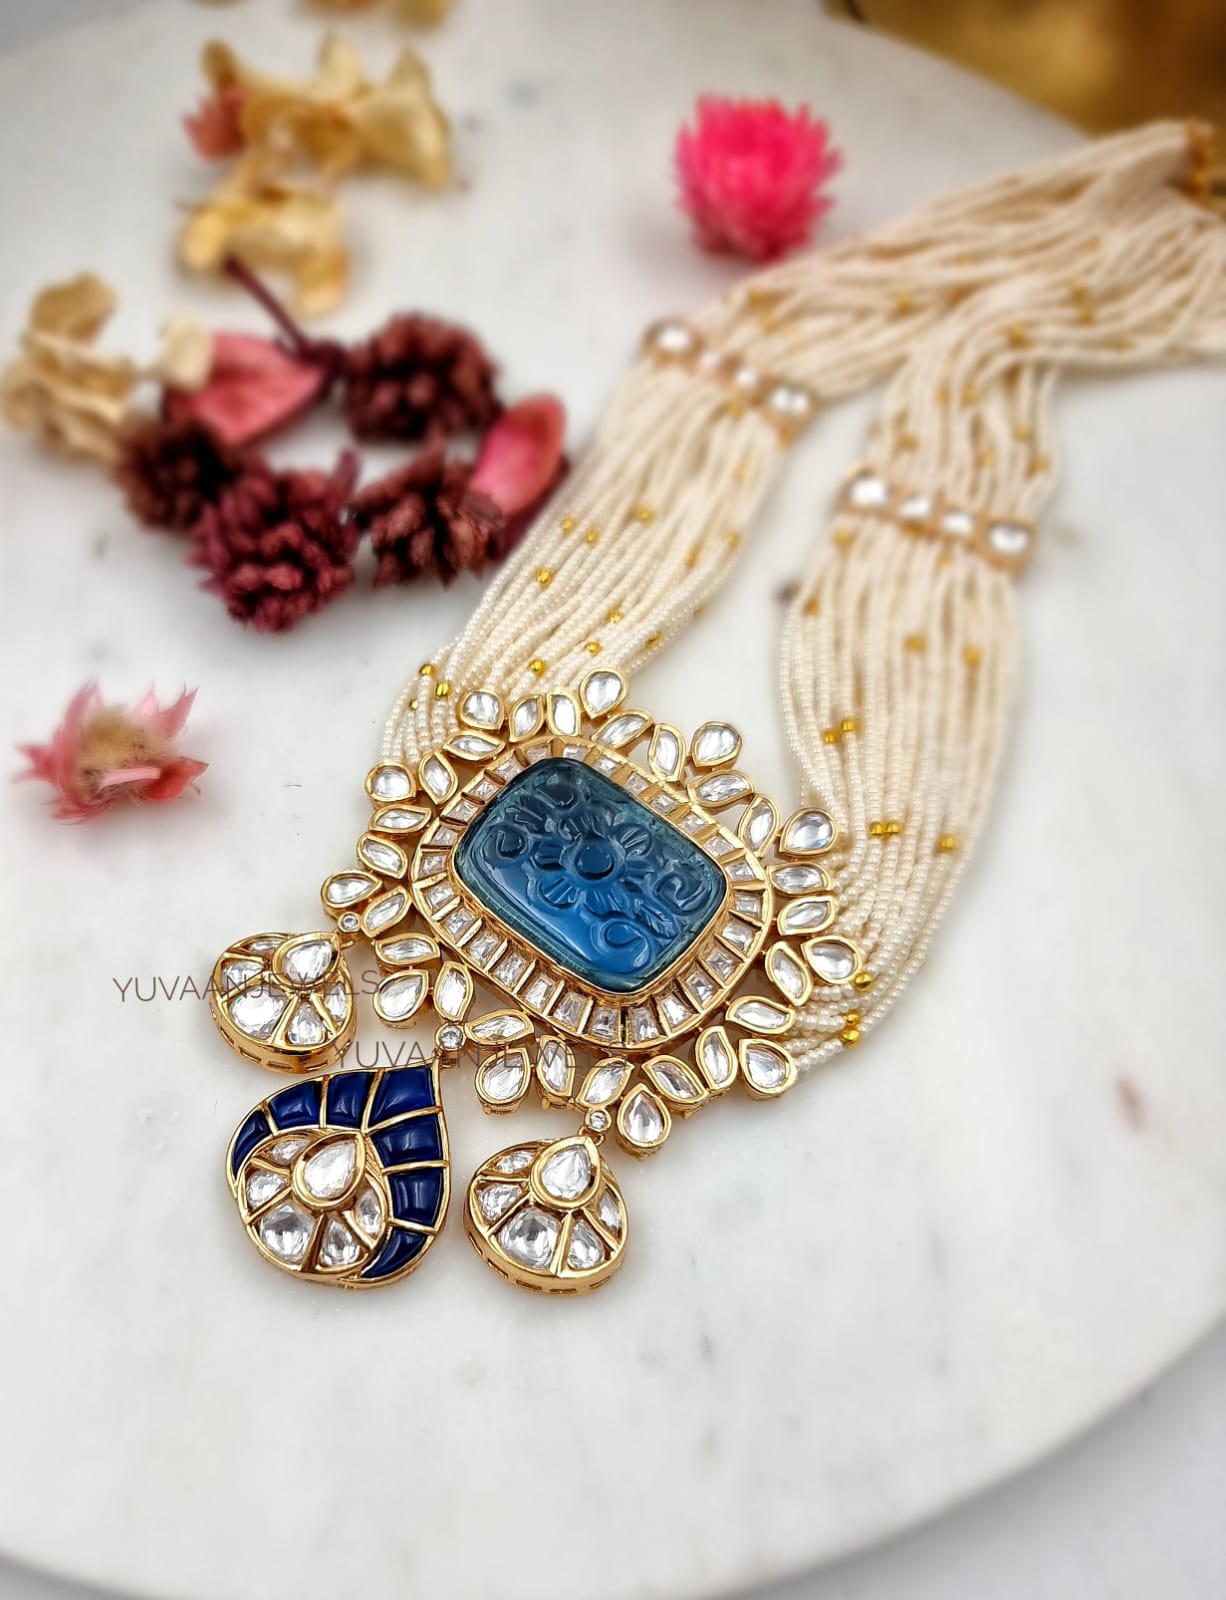 Swara necklace